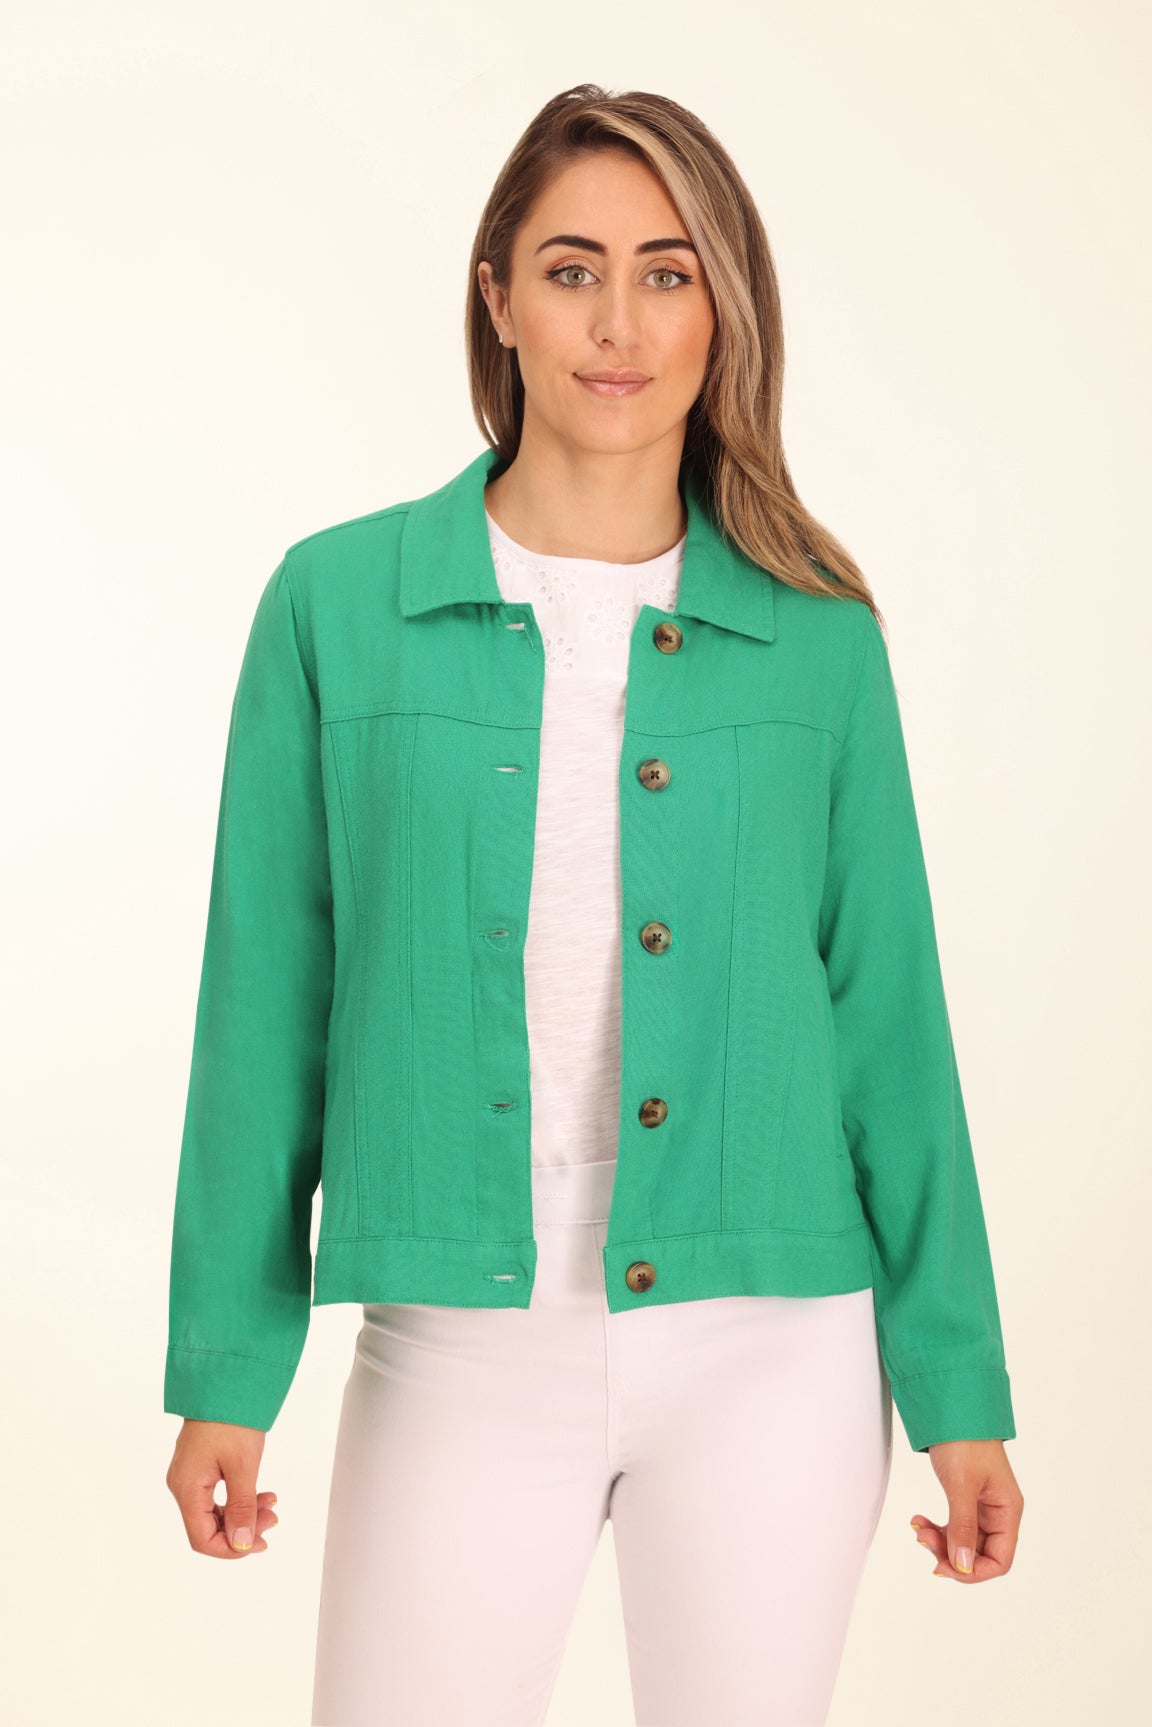 Brushed Fleece Jacket in Jade